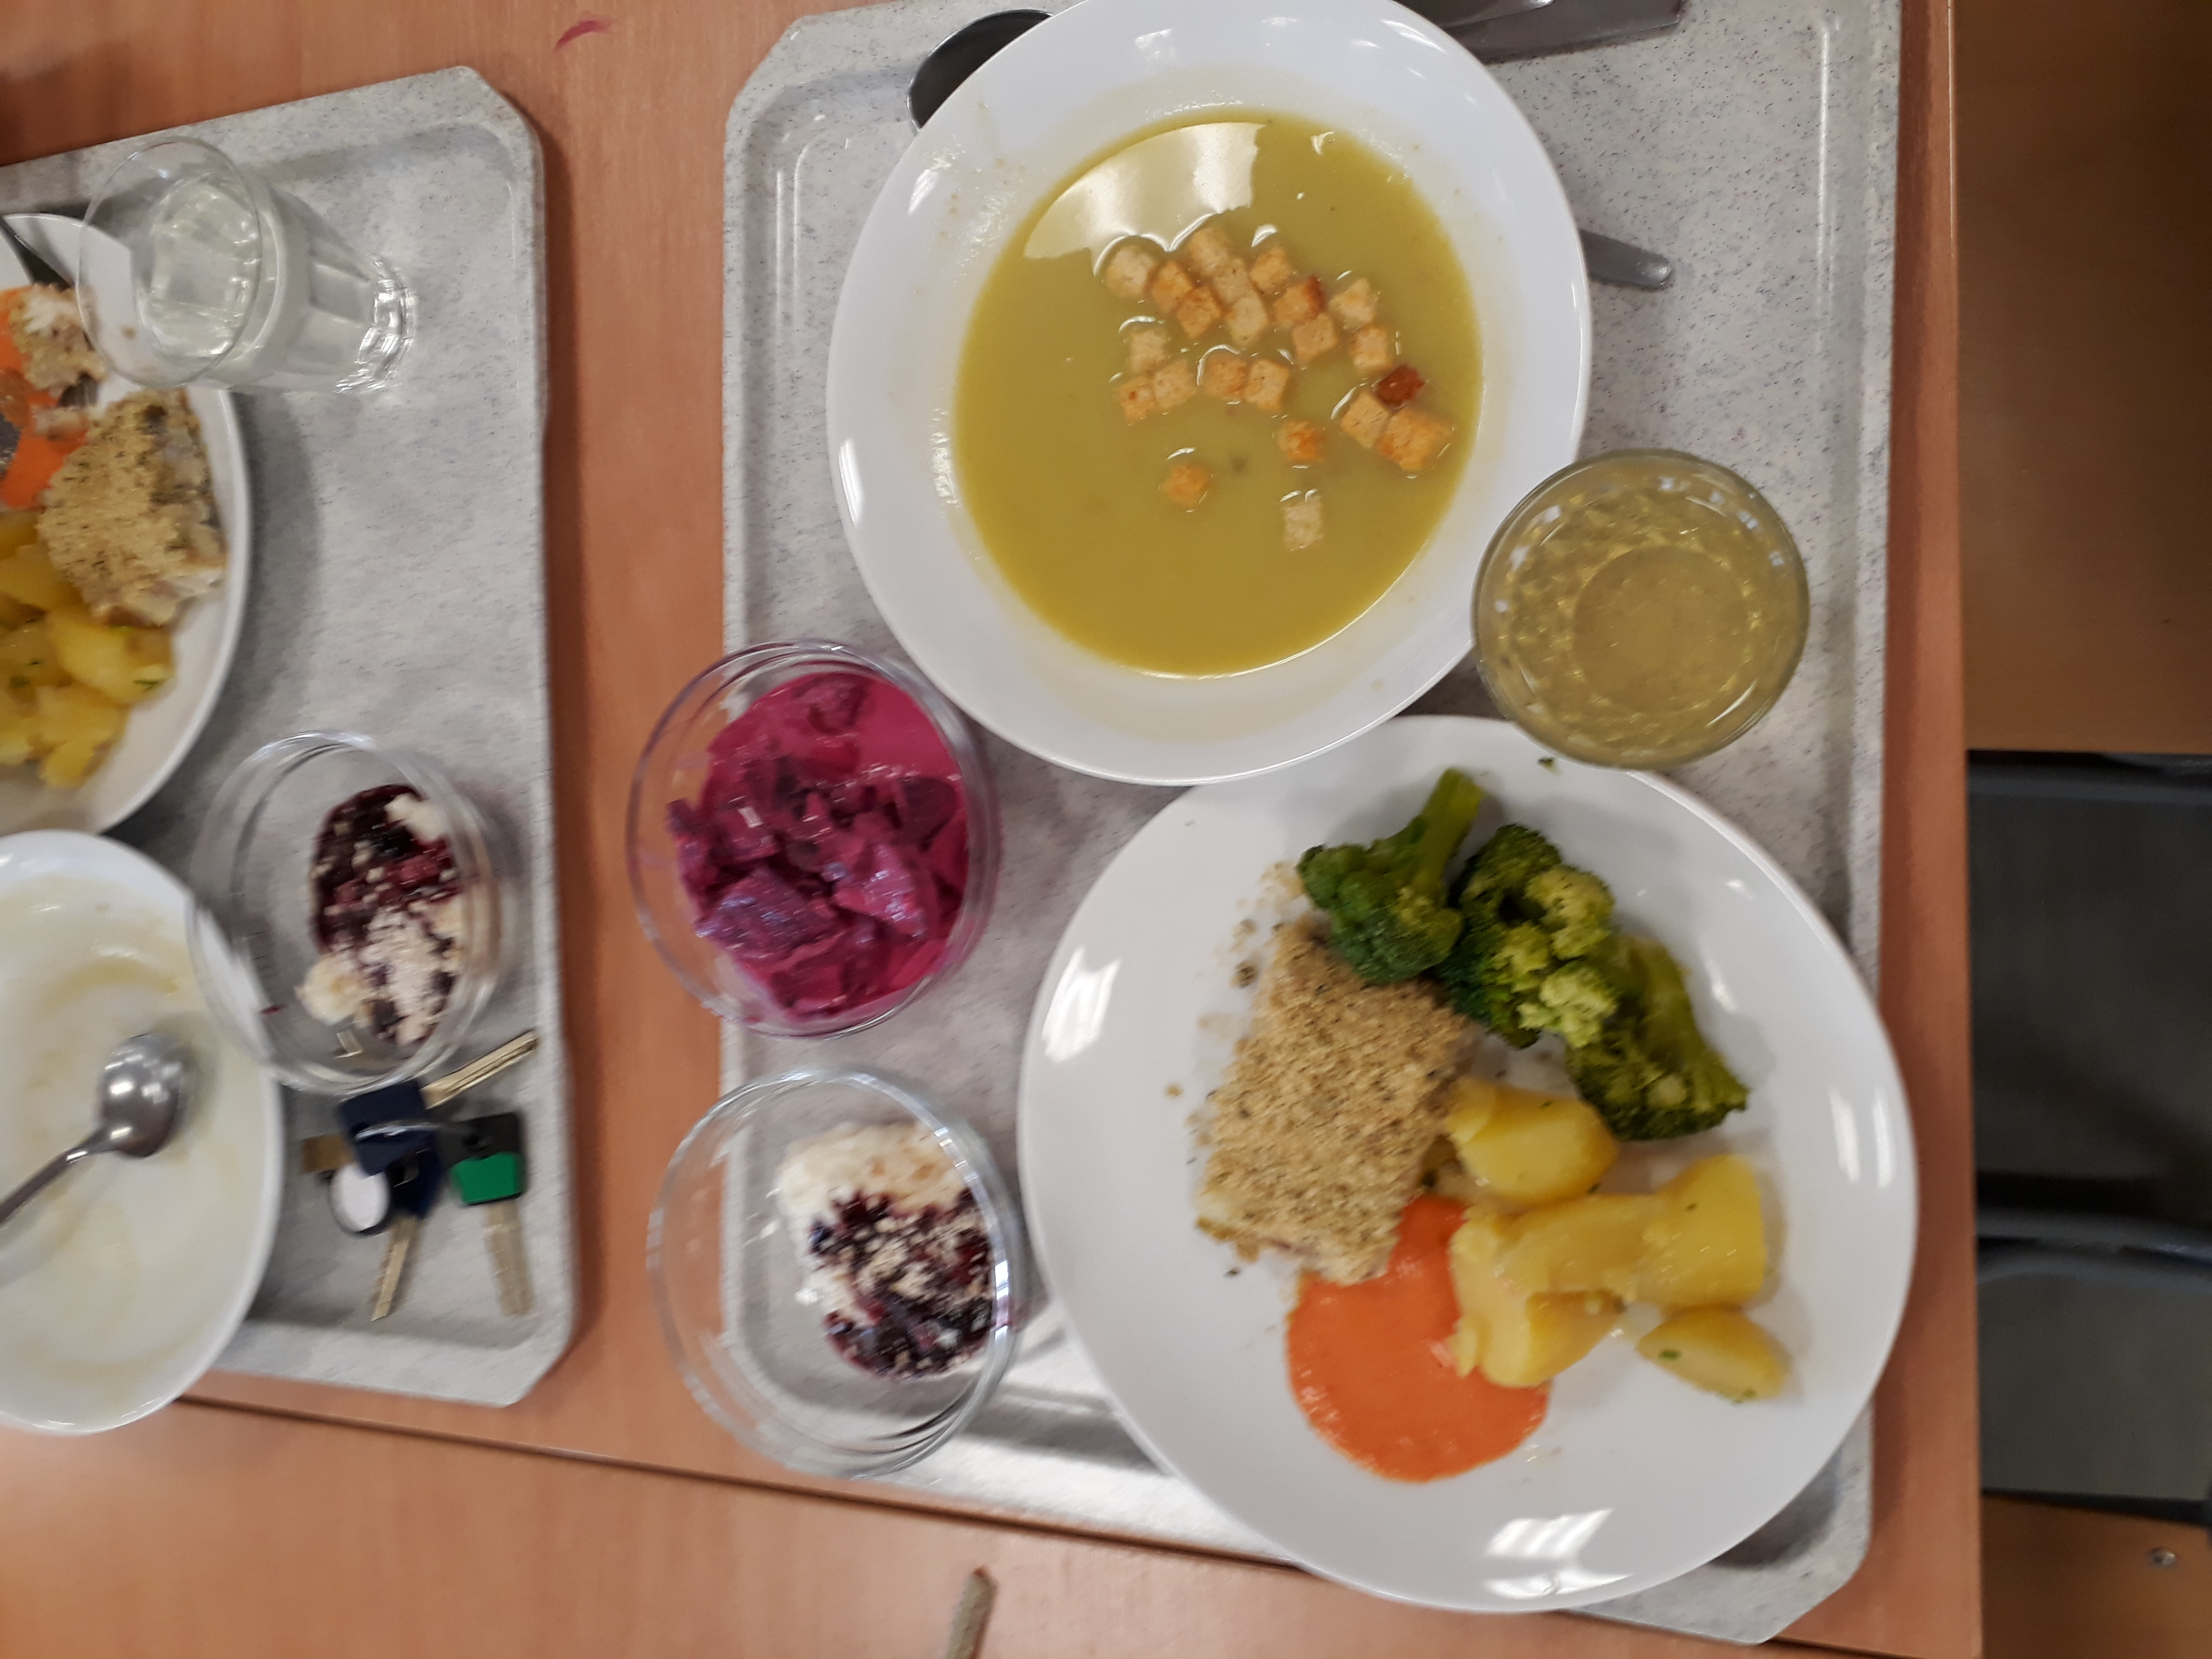 Den norské kuchyně ve školní jídelně ZŠ Pražačka